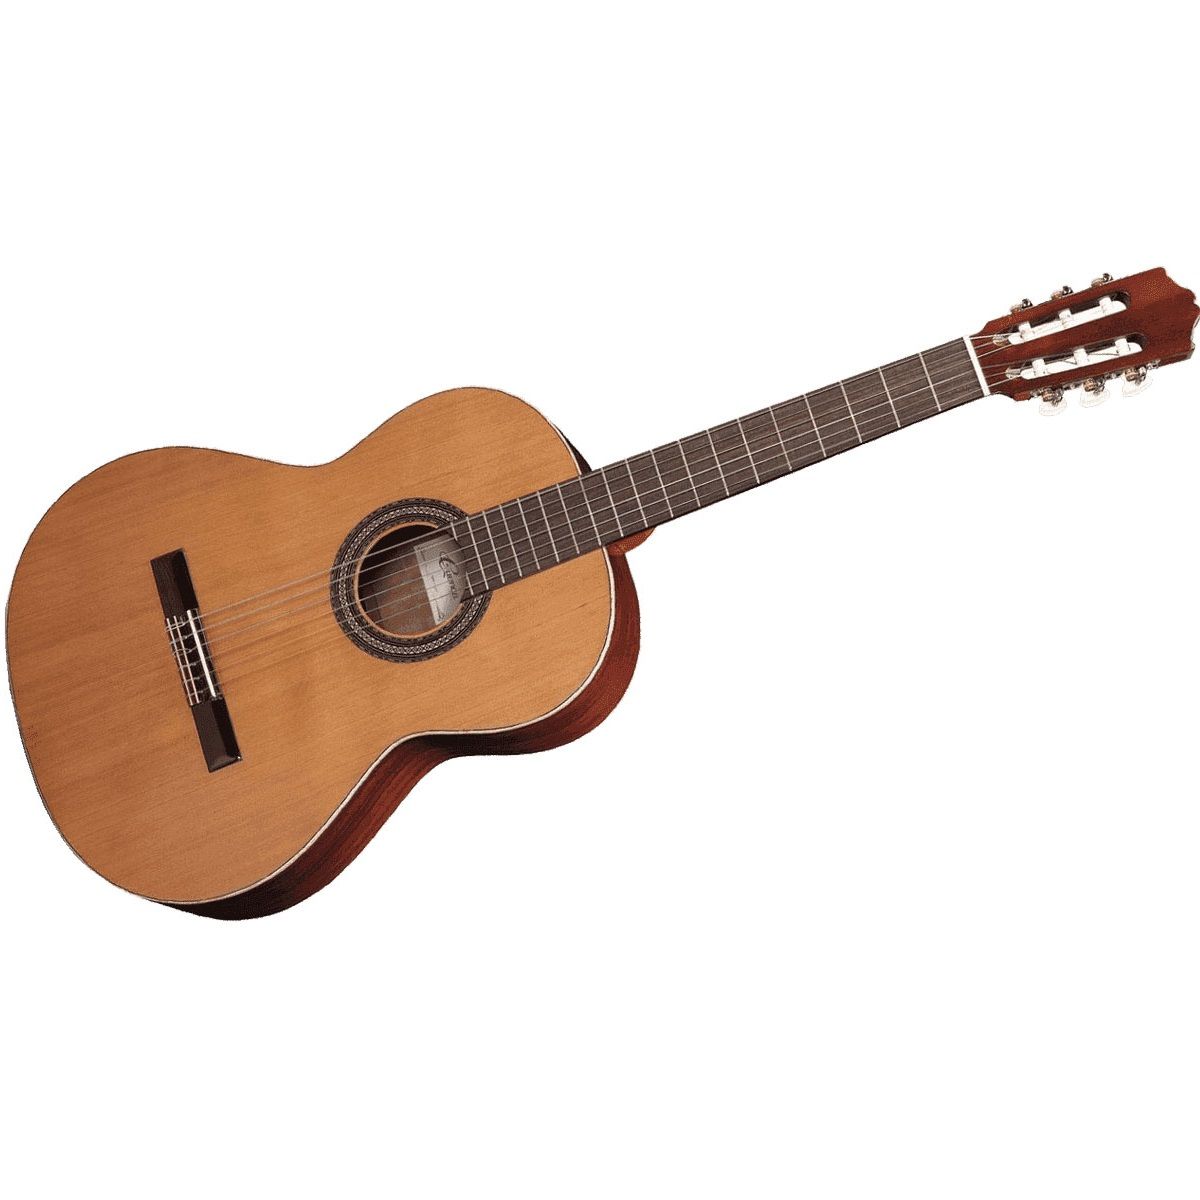 Картинка Гитара классическая Cuenca  мод. 10 SENORITA размер 7/8 - лучшая цена, доставка по России. Фото N2